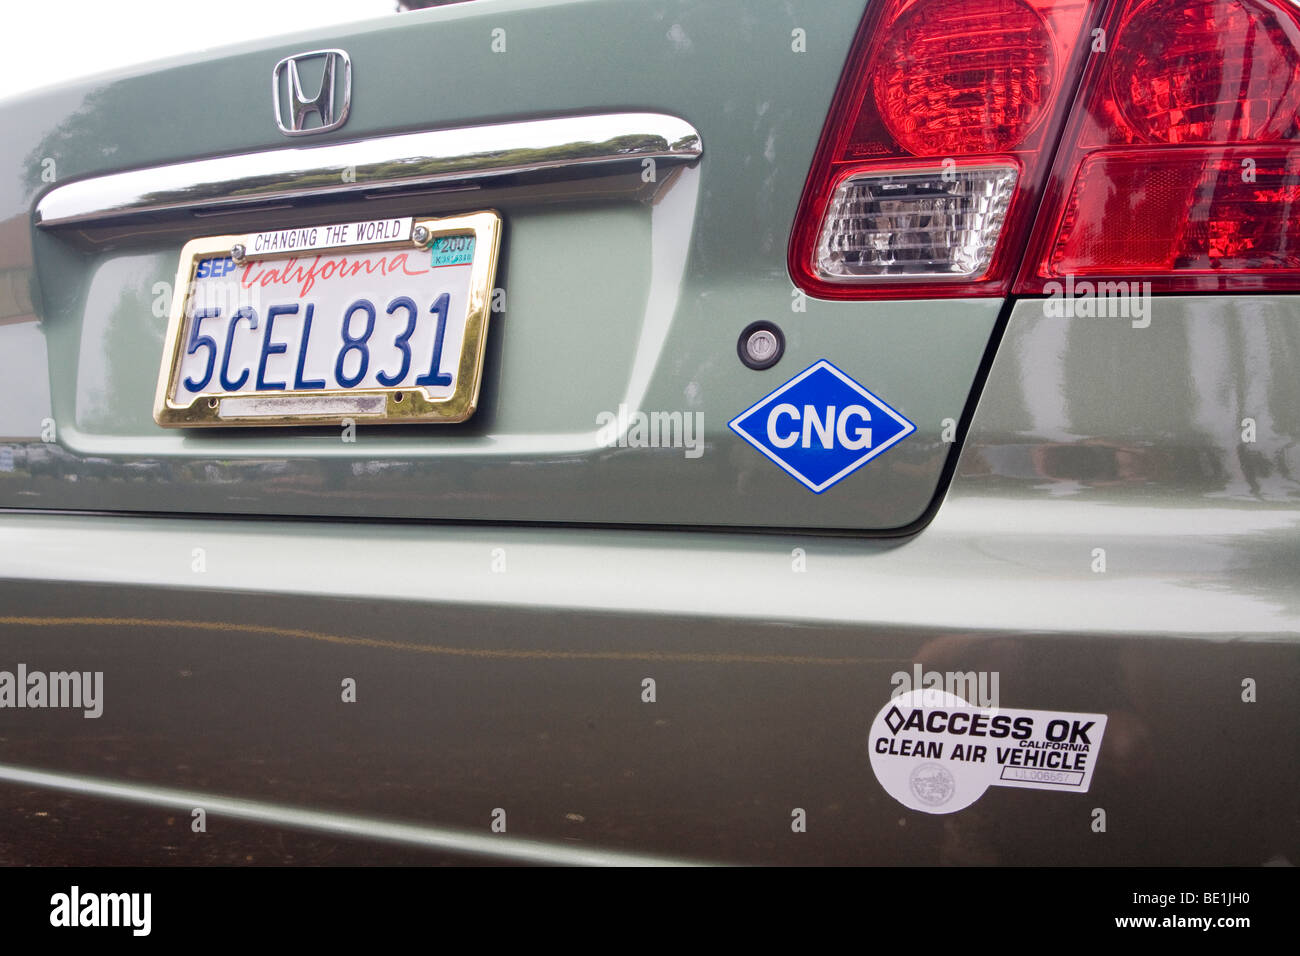 Rückansicht des Honda Civic Erdgasfahrzeug (NGV) mit einem CNG (compressed Natural Gas) und saubere Luftfahrzeug Aufkleber. USA Stockfoto